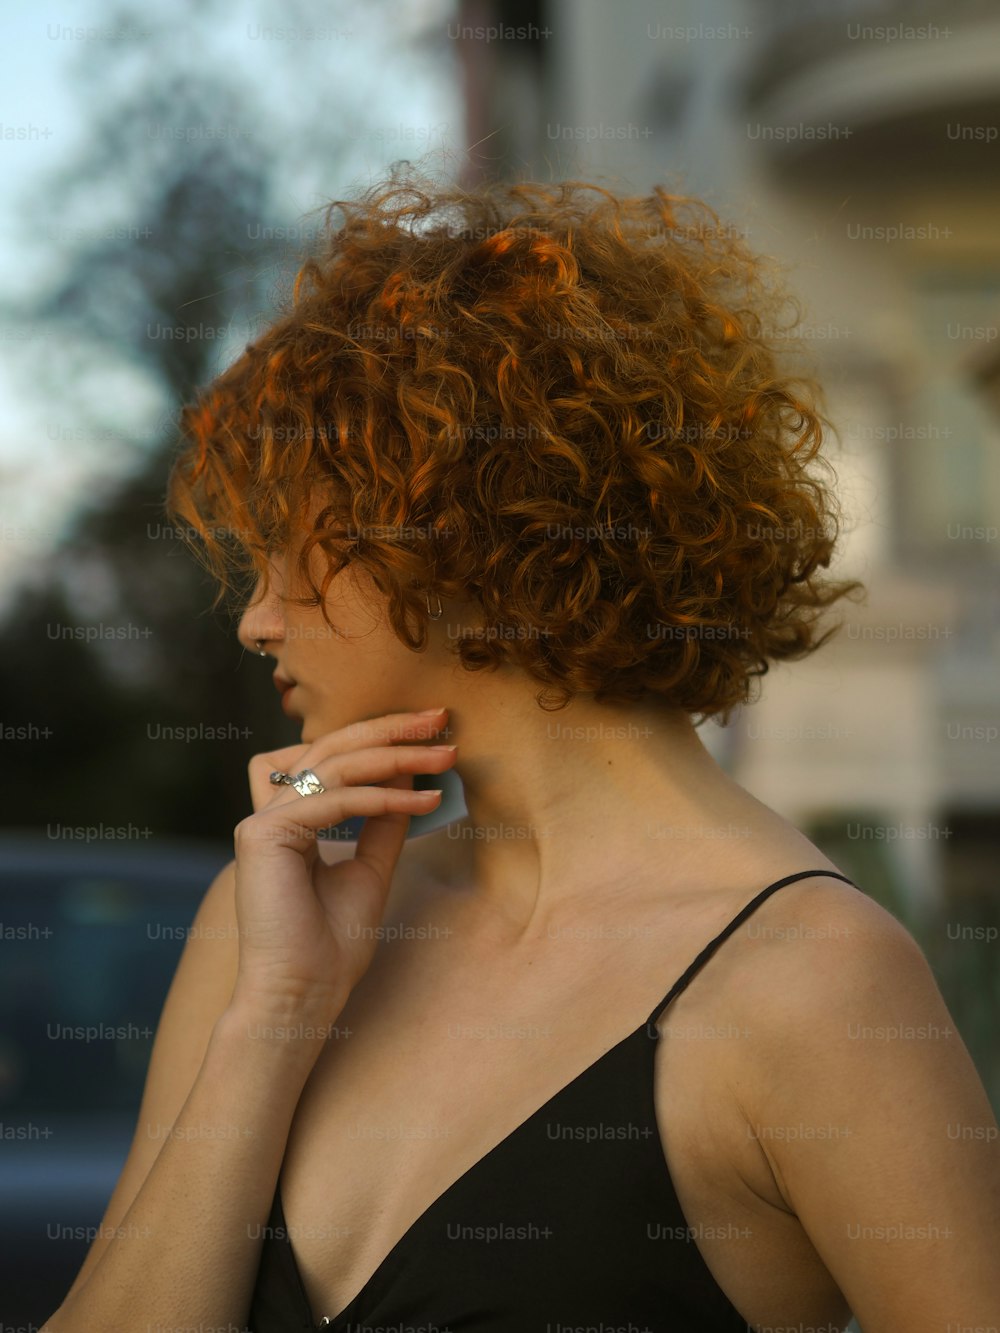 Una donna con i capelli rossi